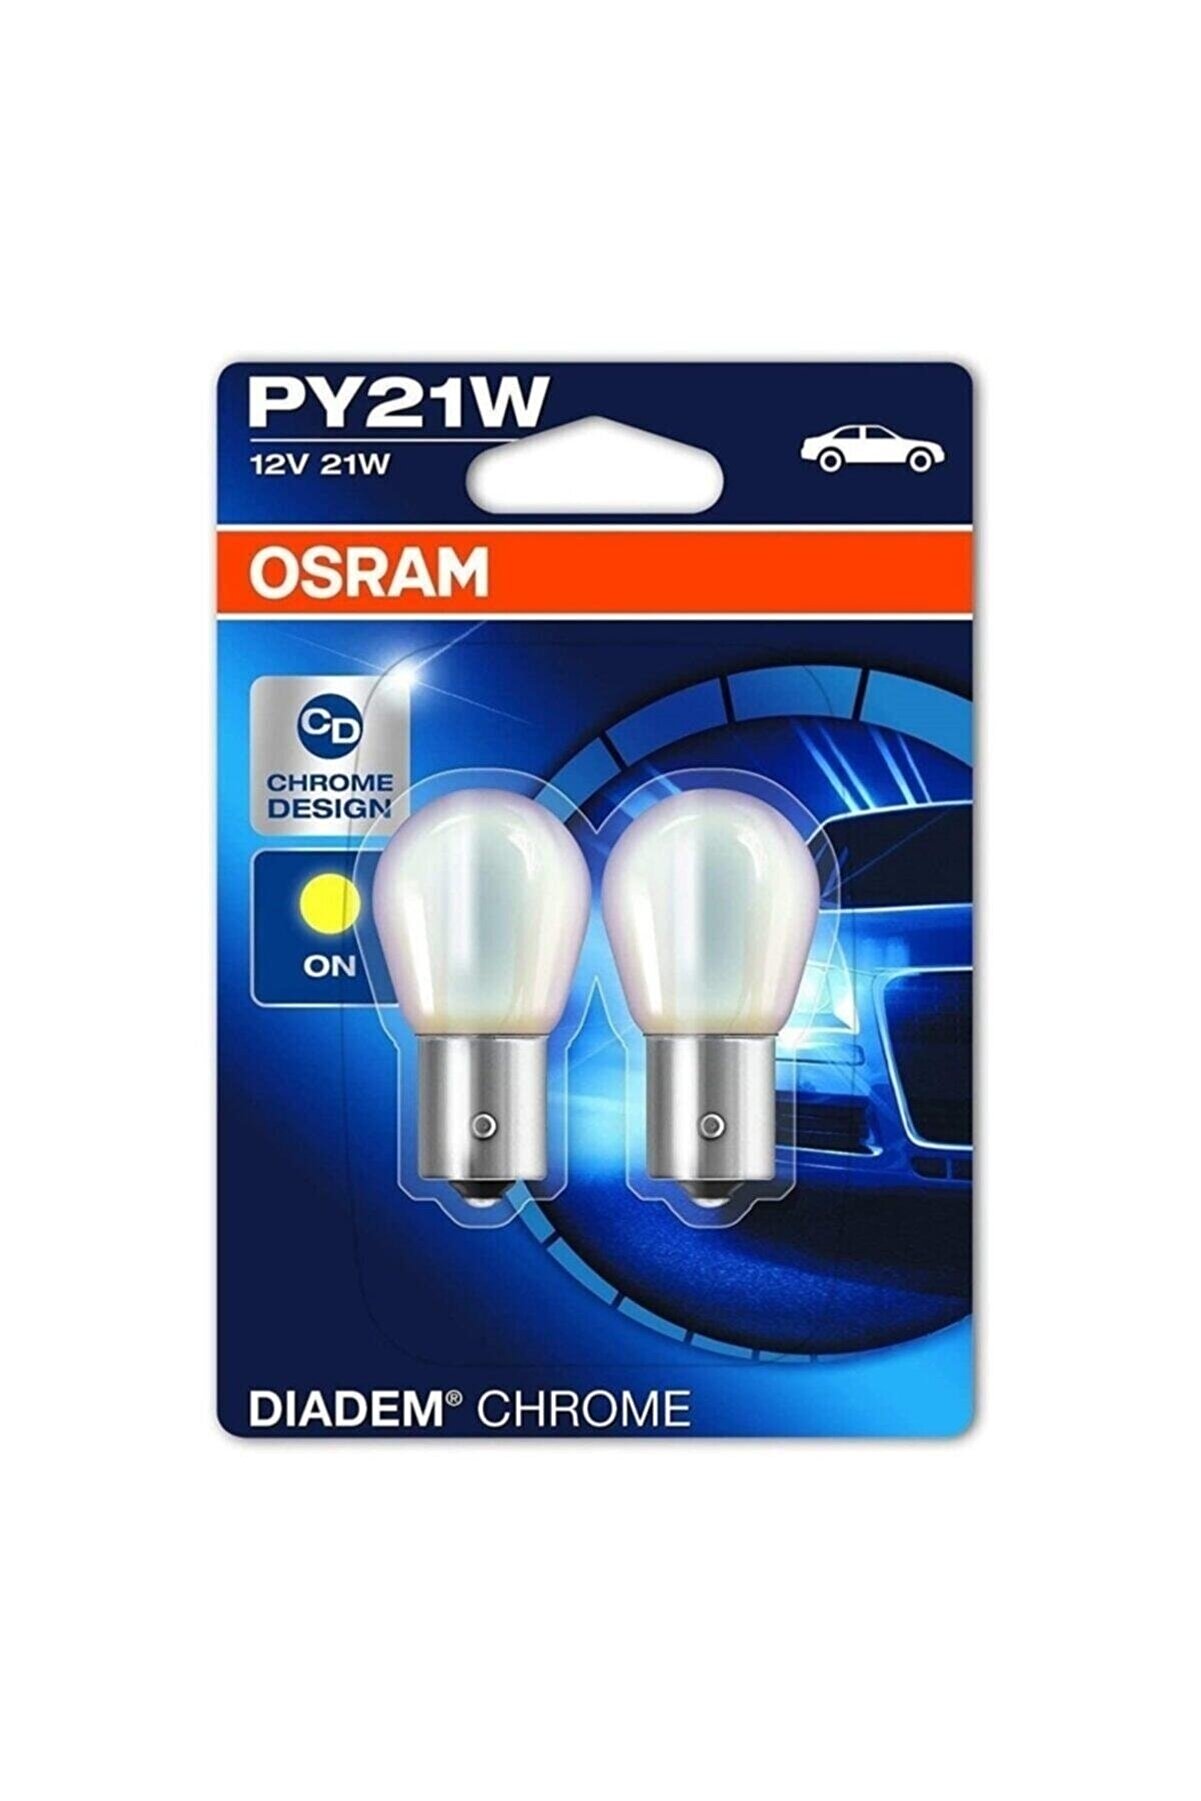 Osram Py21w Krom Sinyal Ampulü Diadem Chrome 2'li Takım